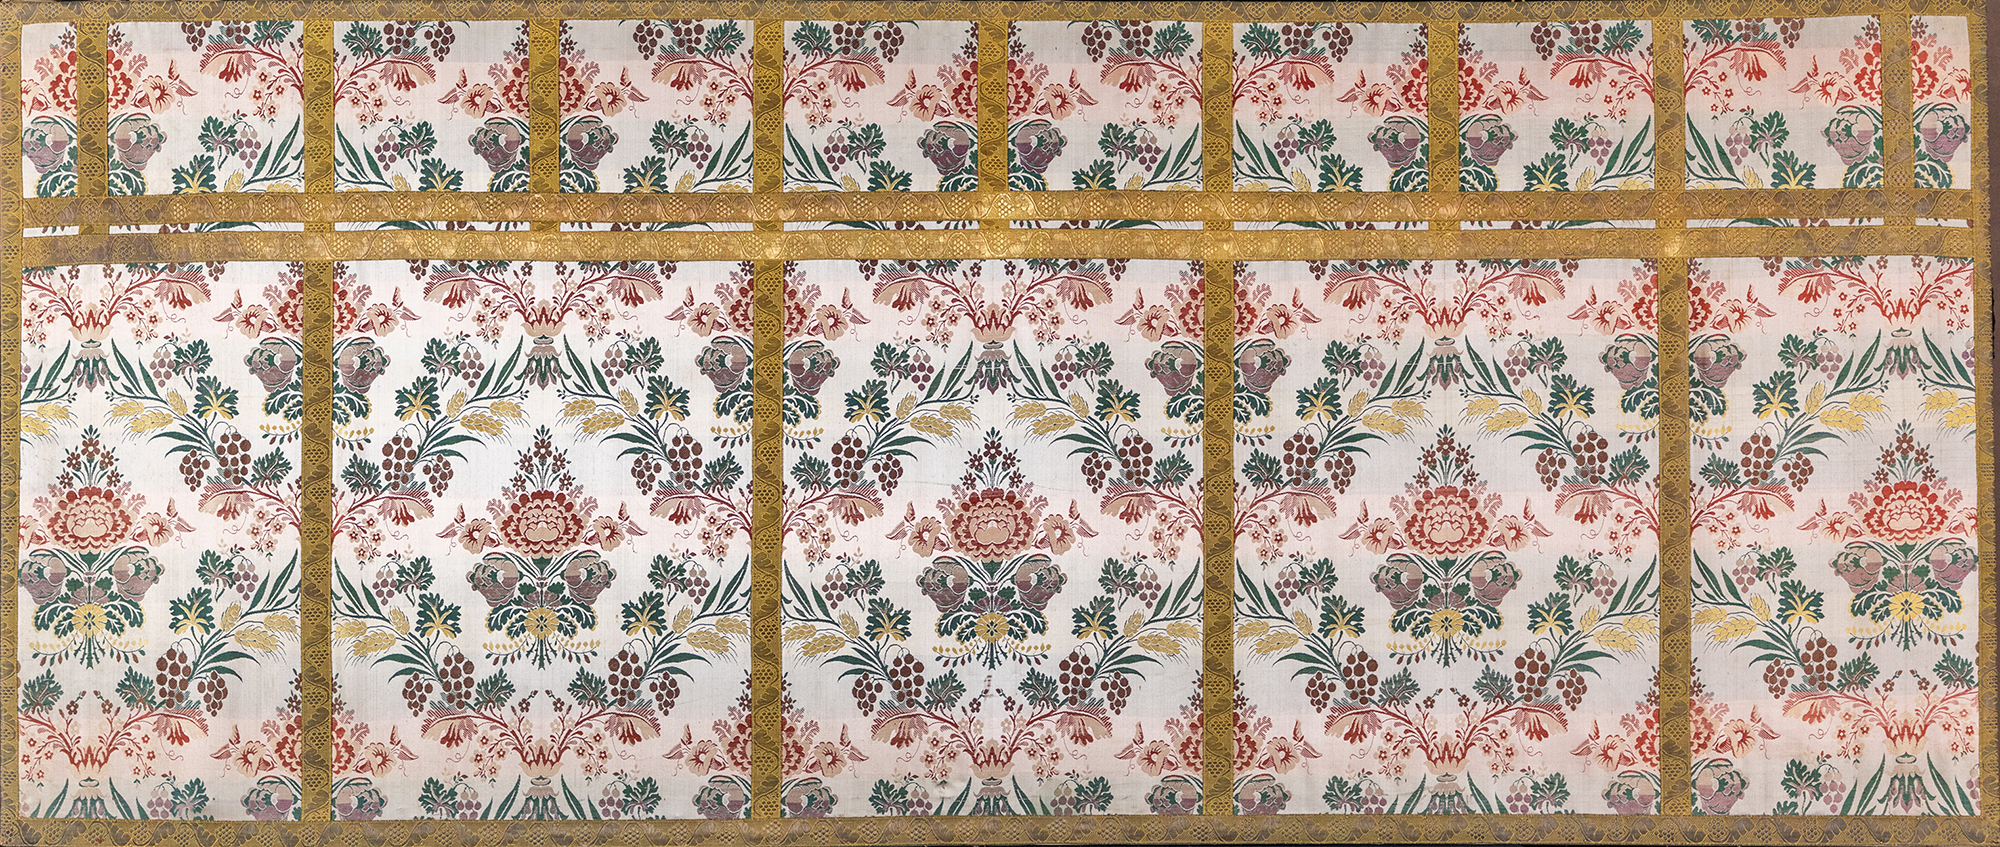 motivi decorativi floreali (paliotto, opera isolata) - manifattura italiana (fine/ inizio secc. XIX/ XX)